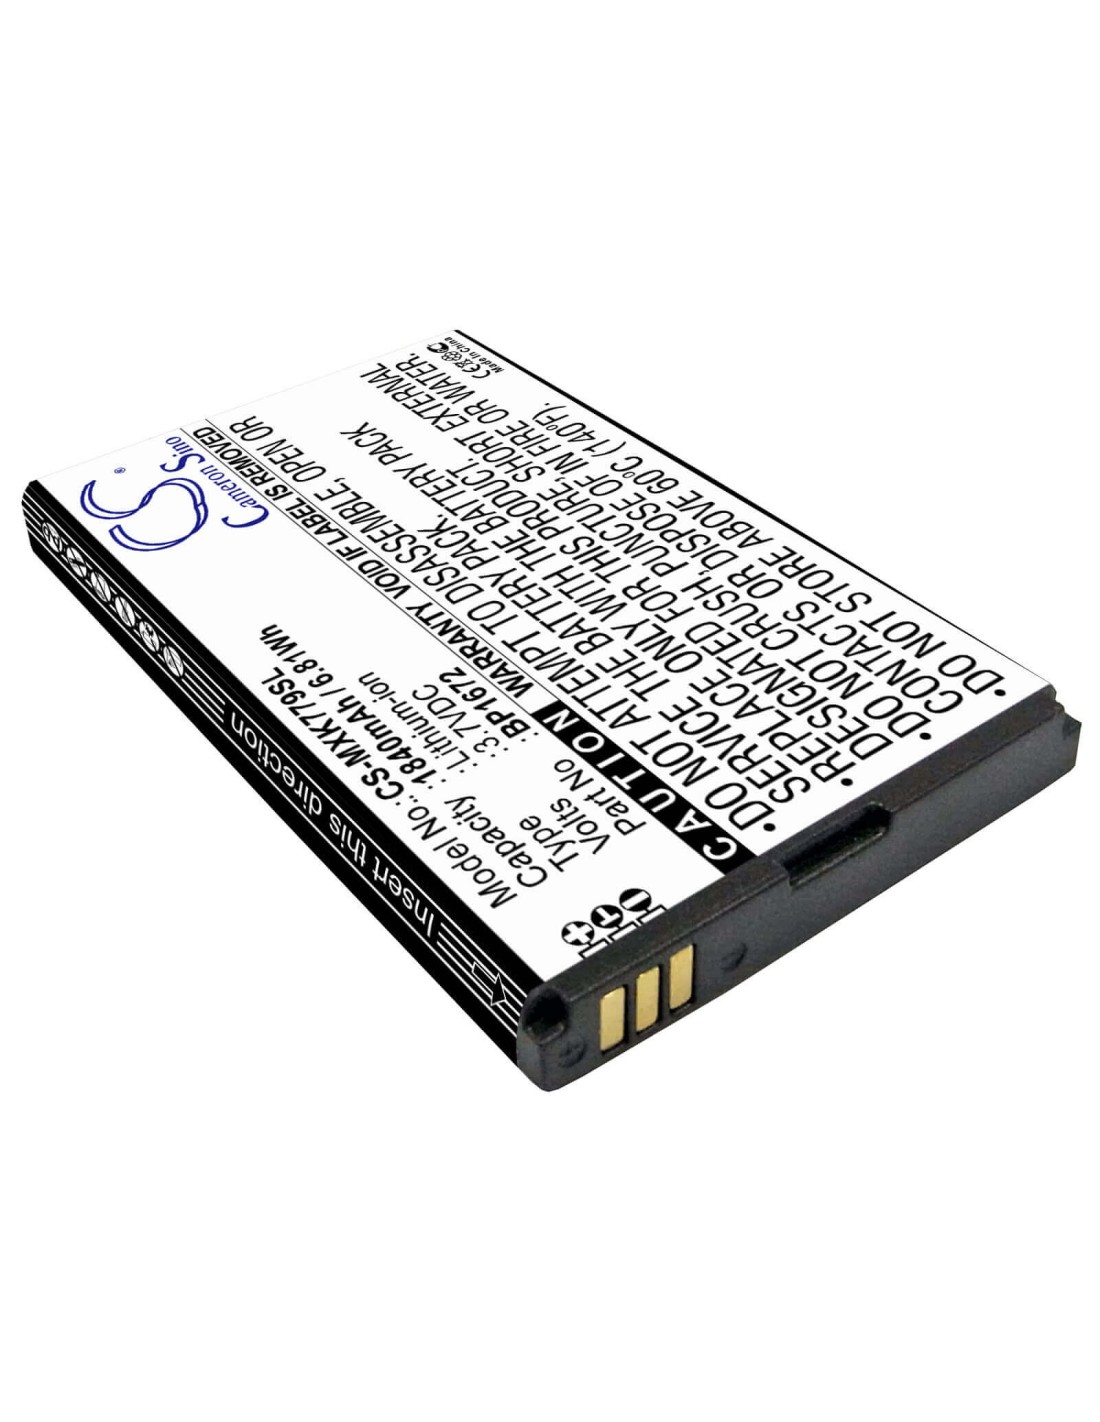 Battery for Moxee, K779, K779hsdg_p 3.7V, 1840mAh - 6.81Wh